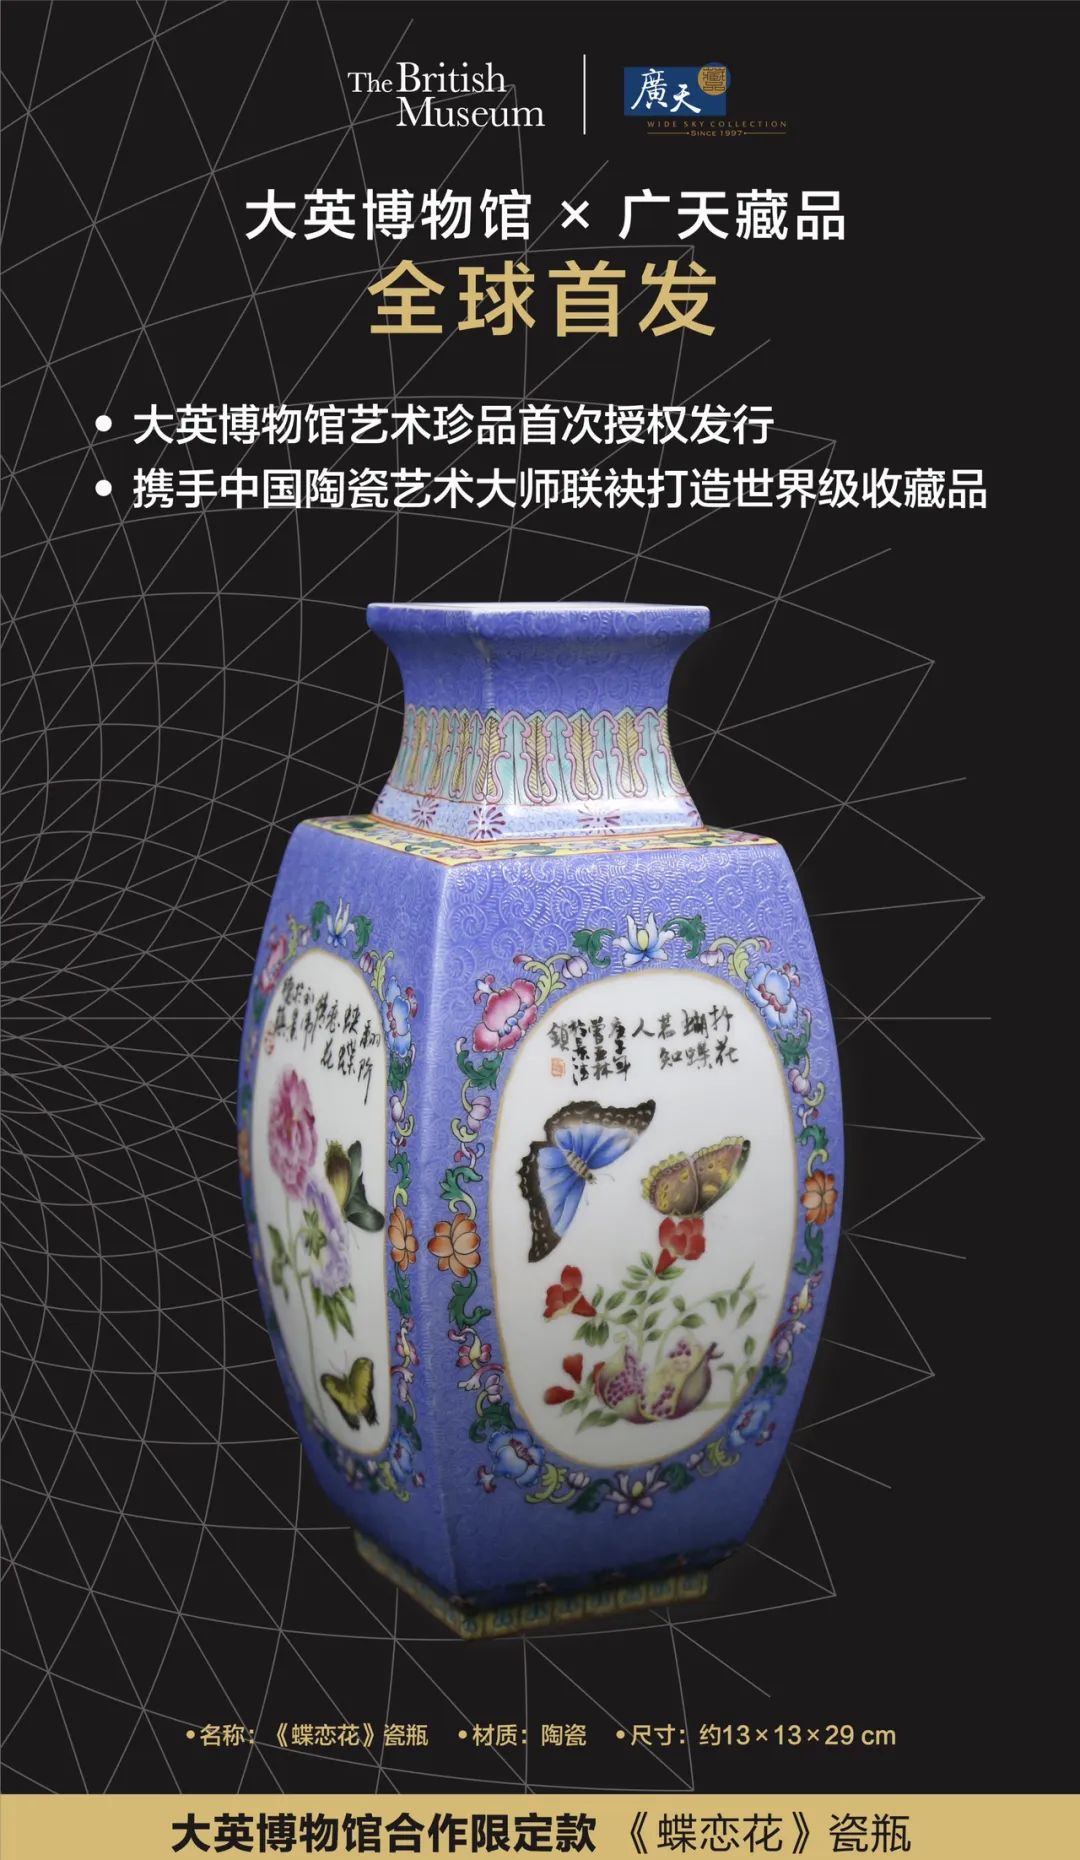 广天藏品25年来首次！溢价1万全球回购大英博物馆合作限定款《蝶恋花》瓷瓶。